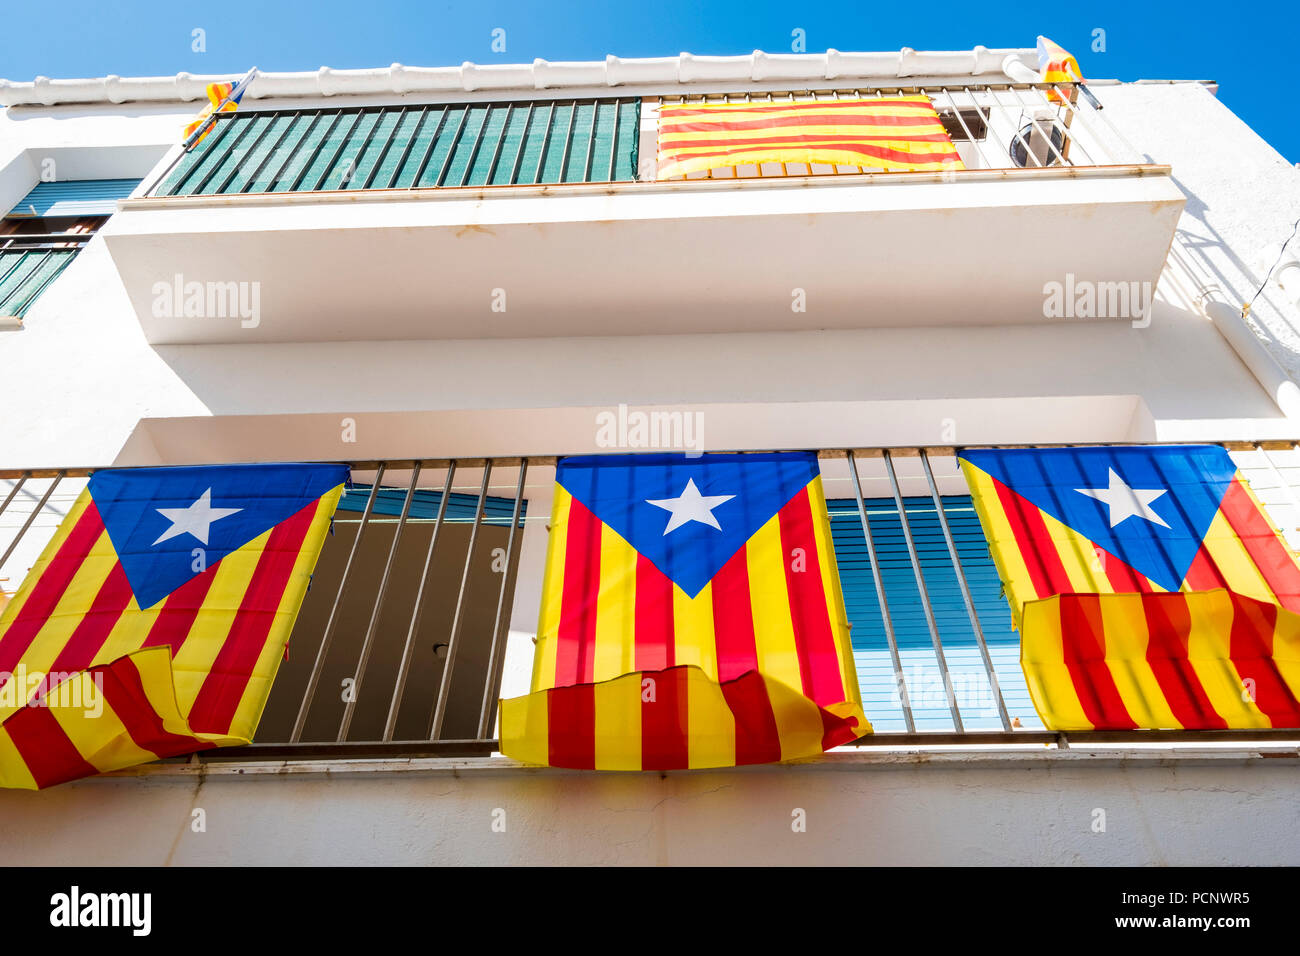 Trois drapeaux indépendantistes connu comme Esteladas suspendu au balcon d'une maison dans une ville sur la Costa Brava, dans la province de Gérone en Catalogne Espagne Banque D'Images